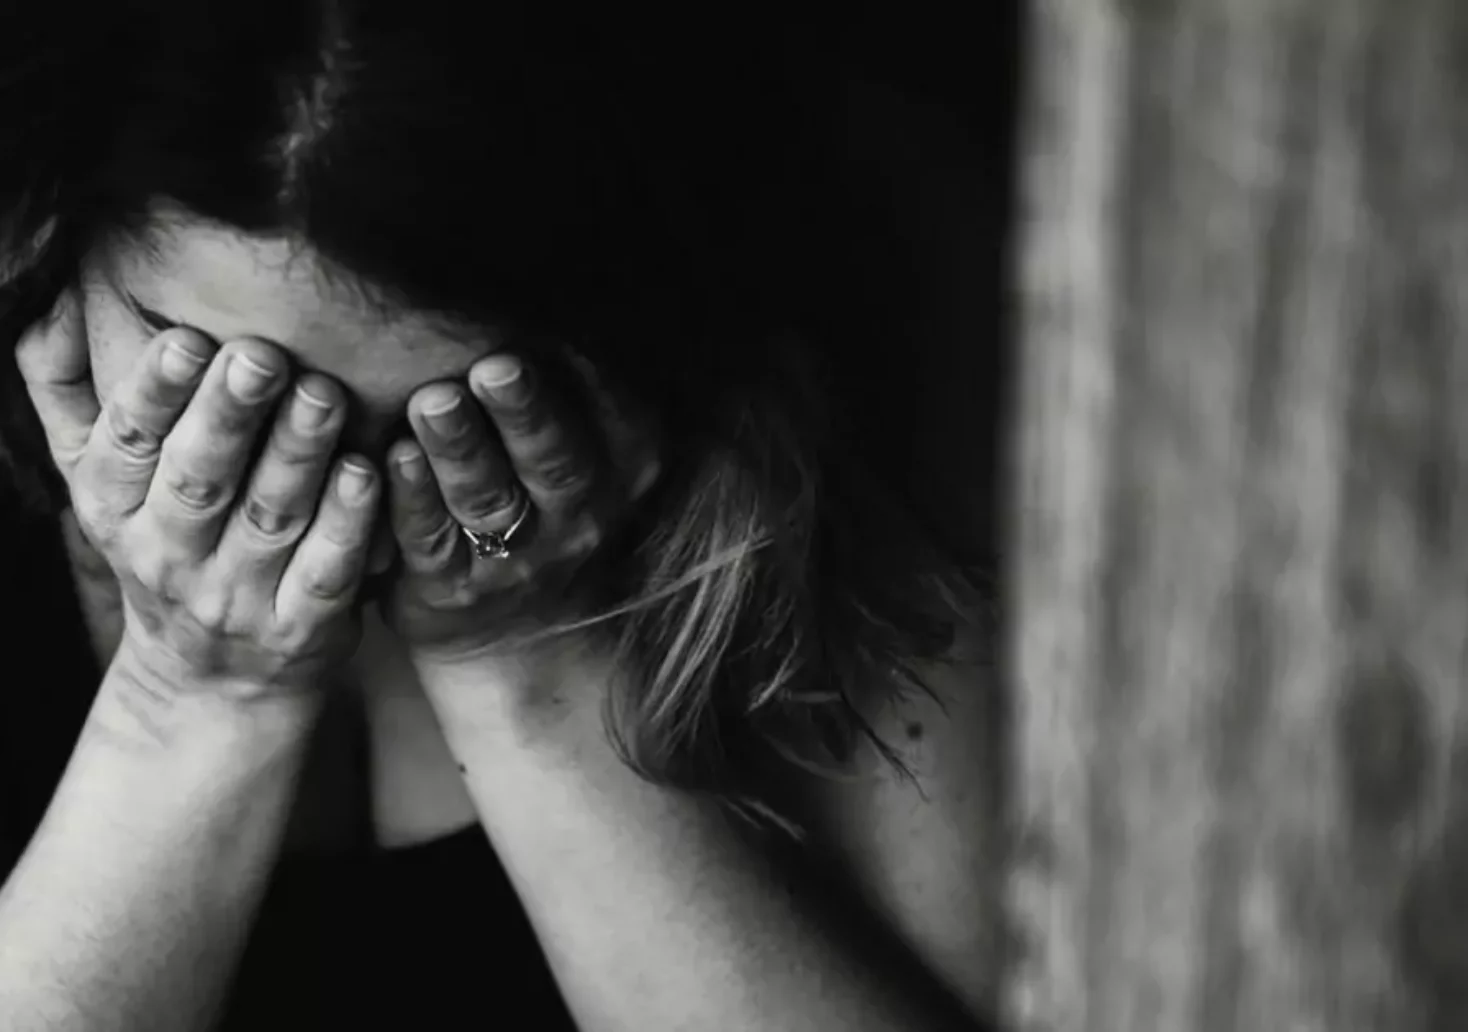 Foto in Beitrag von 5min.at: Zu sehen ist eine Frau, die ihre Hände vor dem Gesicht hat und scheinbar traurig ist. Die Szenerie ist in schwarz-weiß dargestellt.